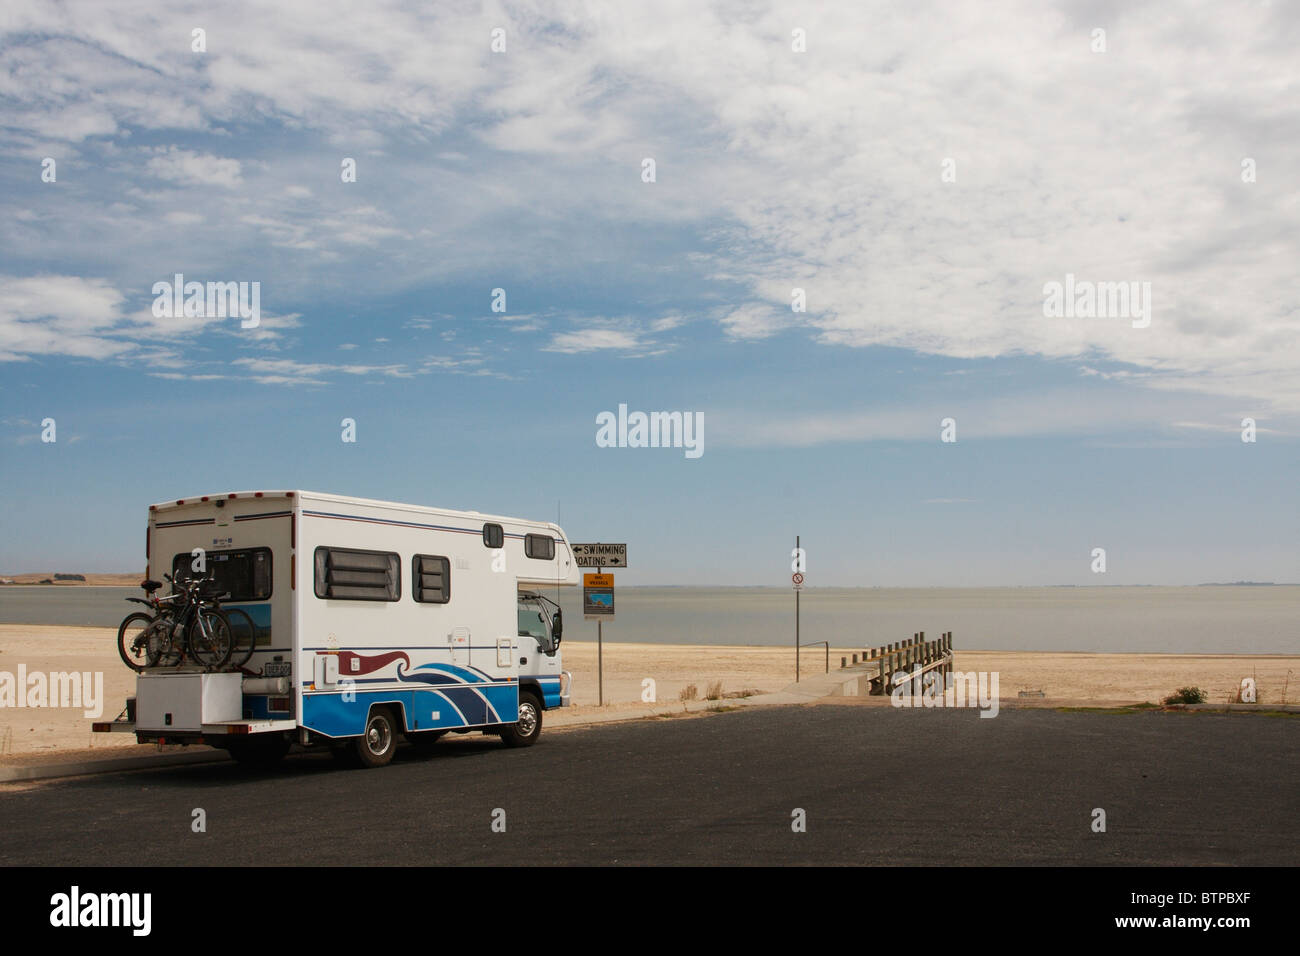 L'Australie, l'Australie, de Coorong, Meningie, camping-car sur road près de la plage Banque D'Images